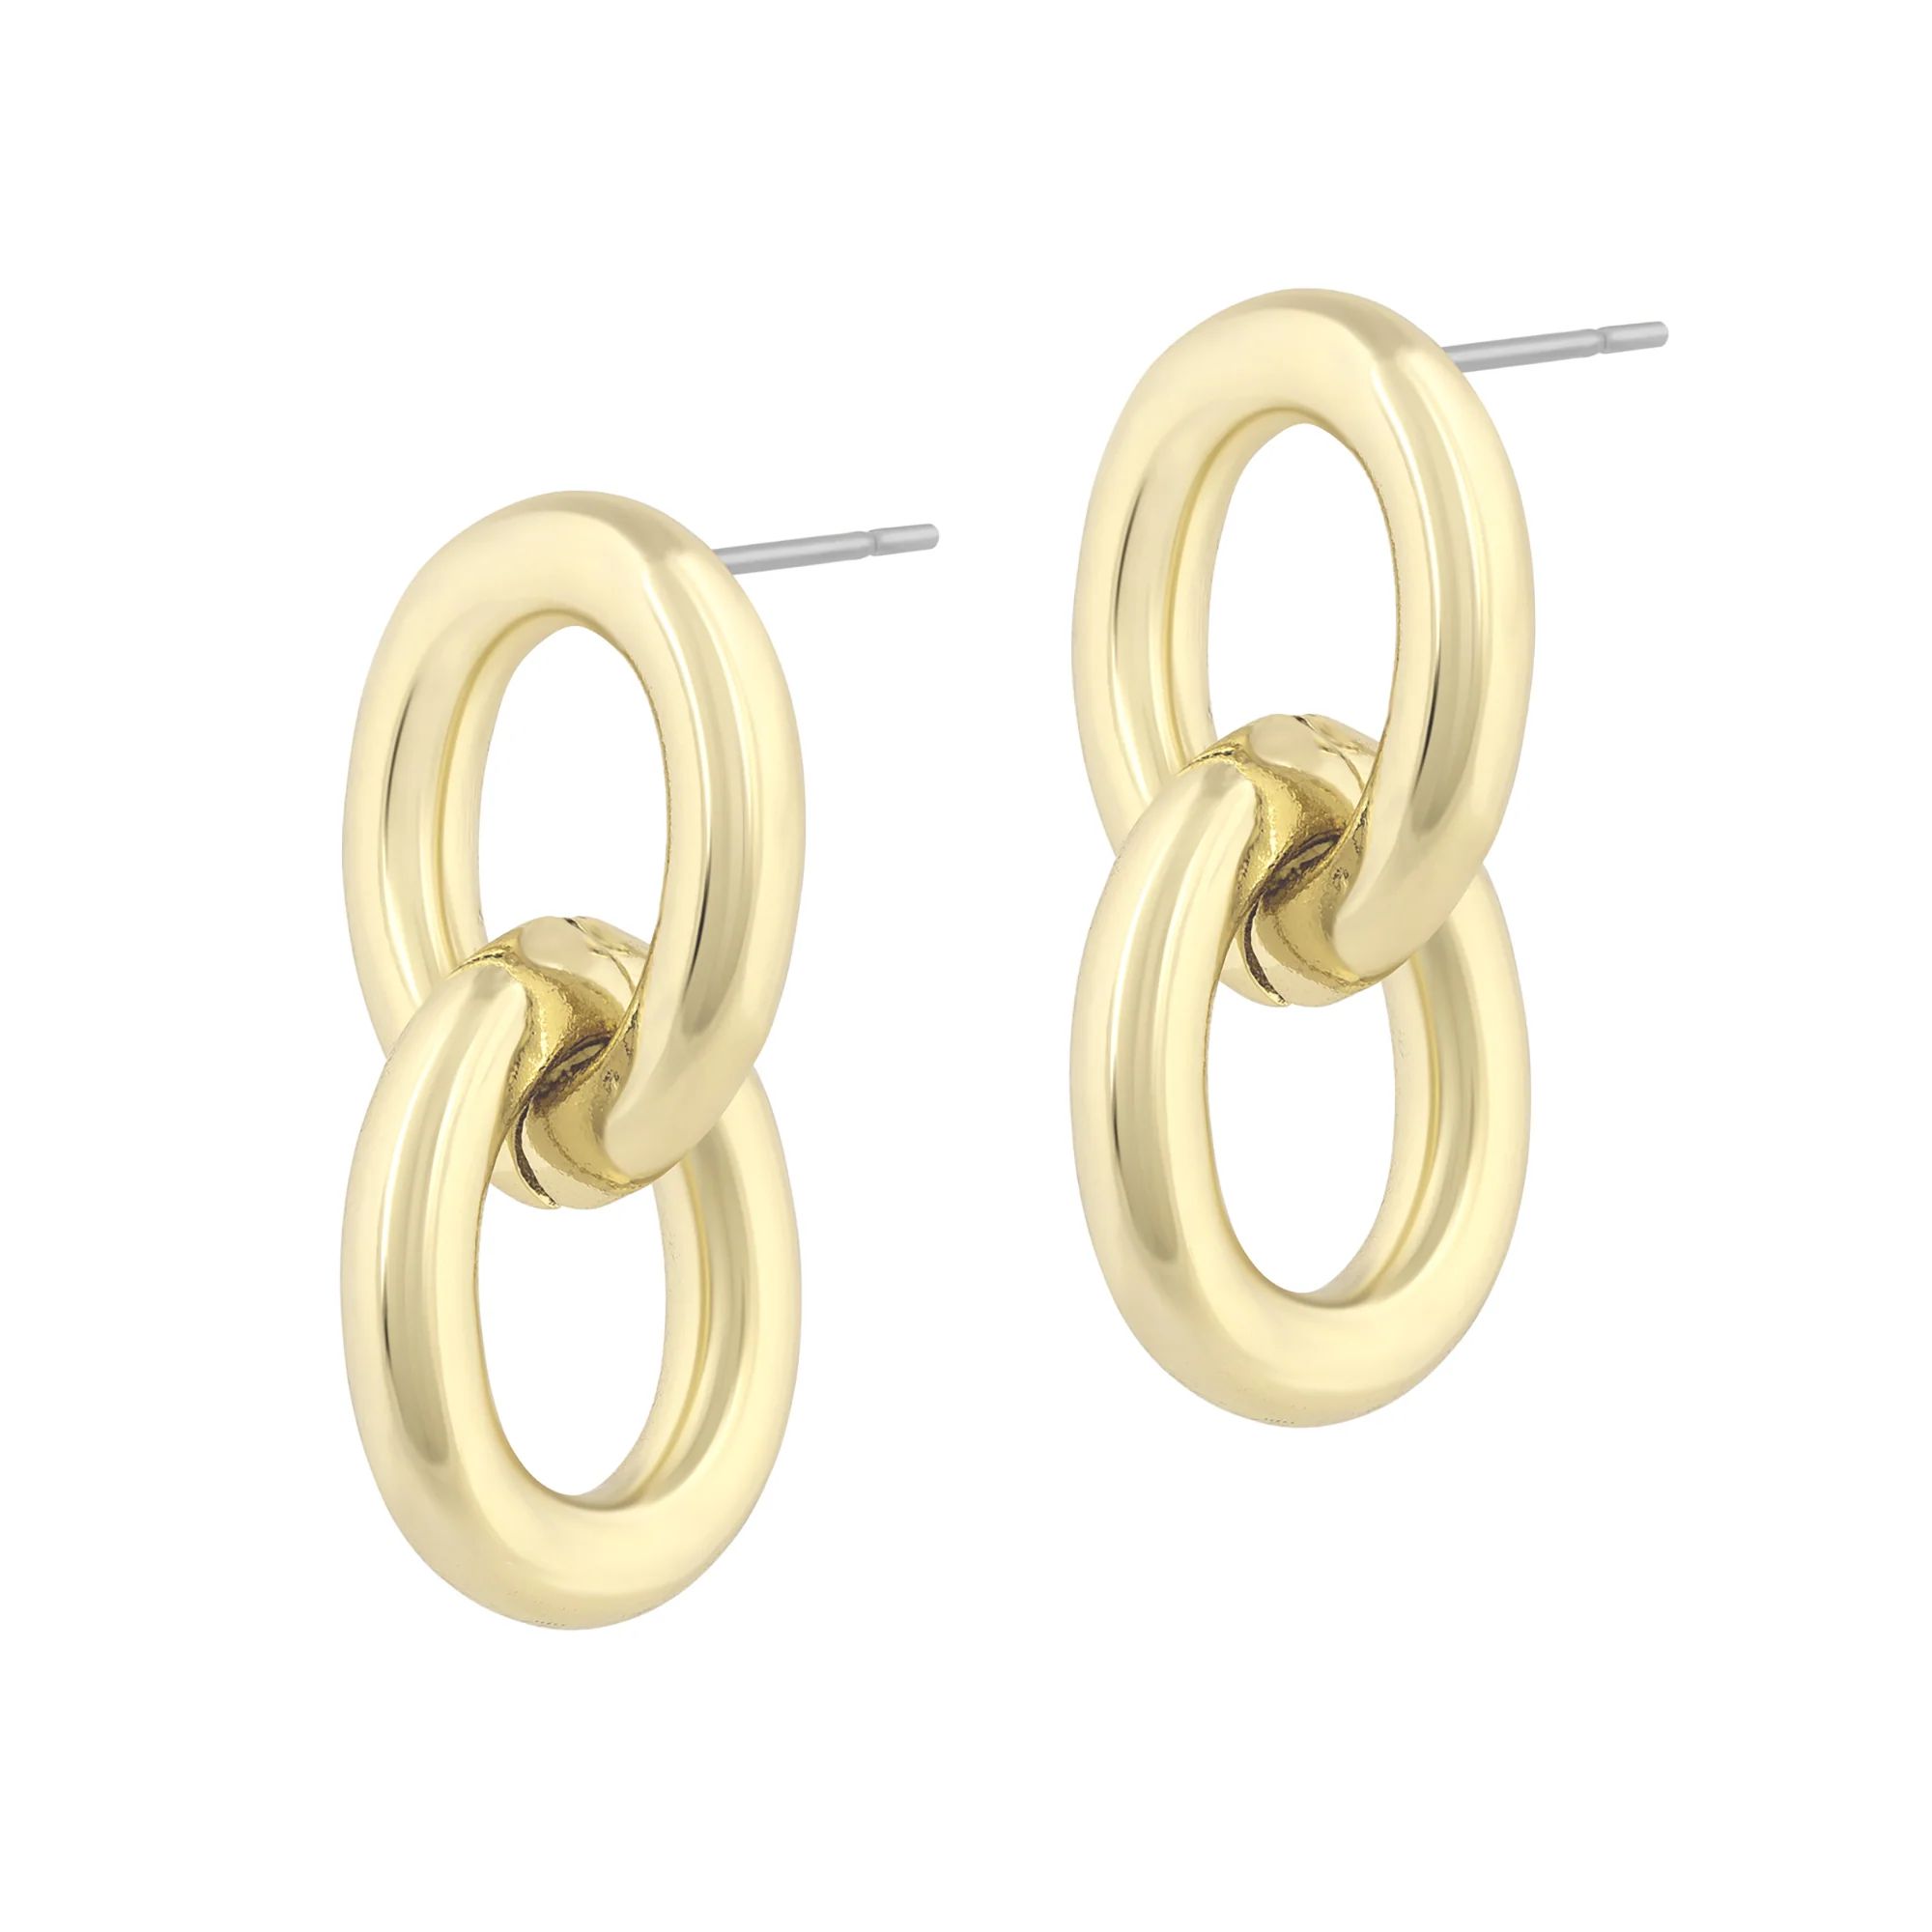 Levi Earrings | Electric Picks Jewelry